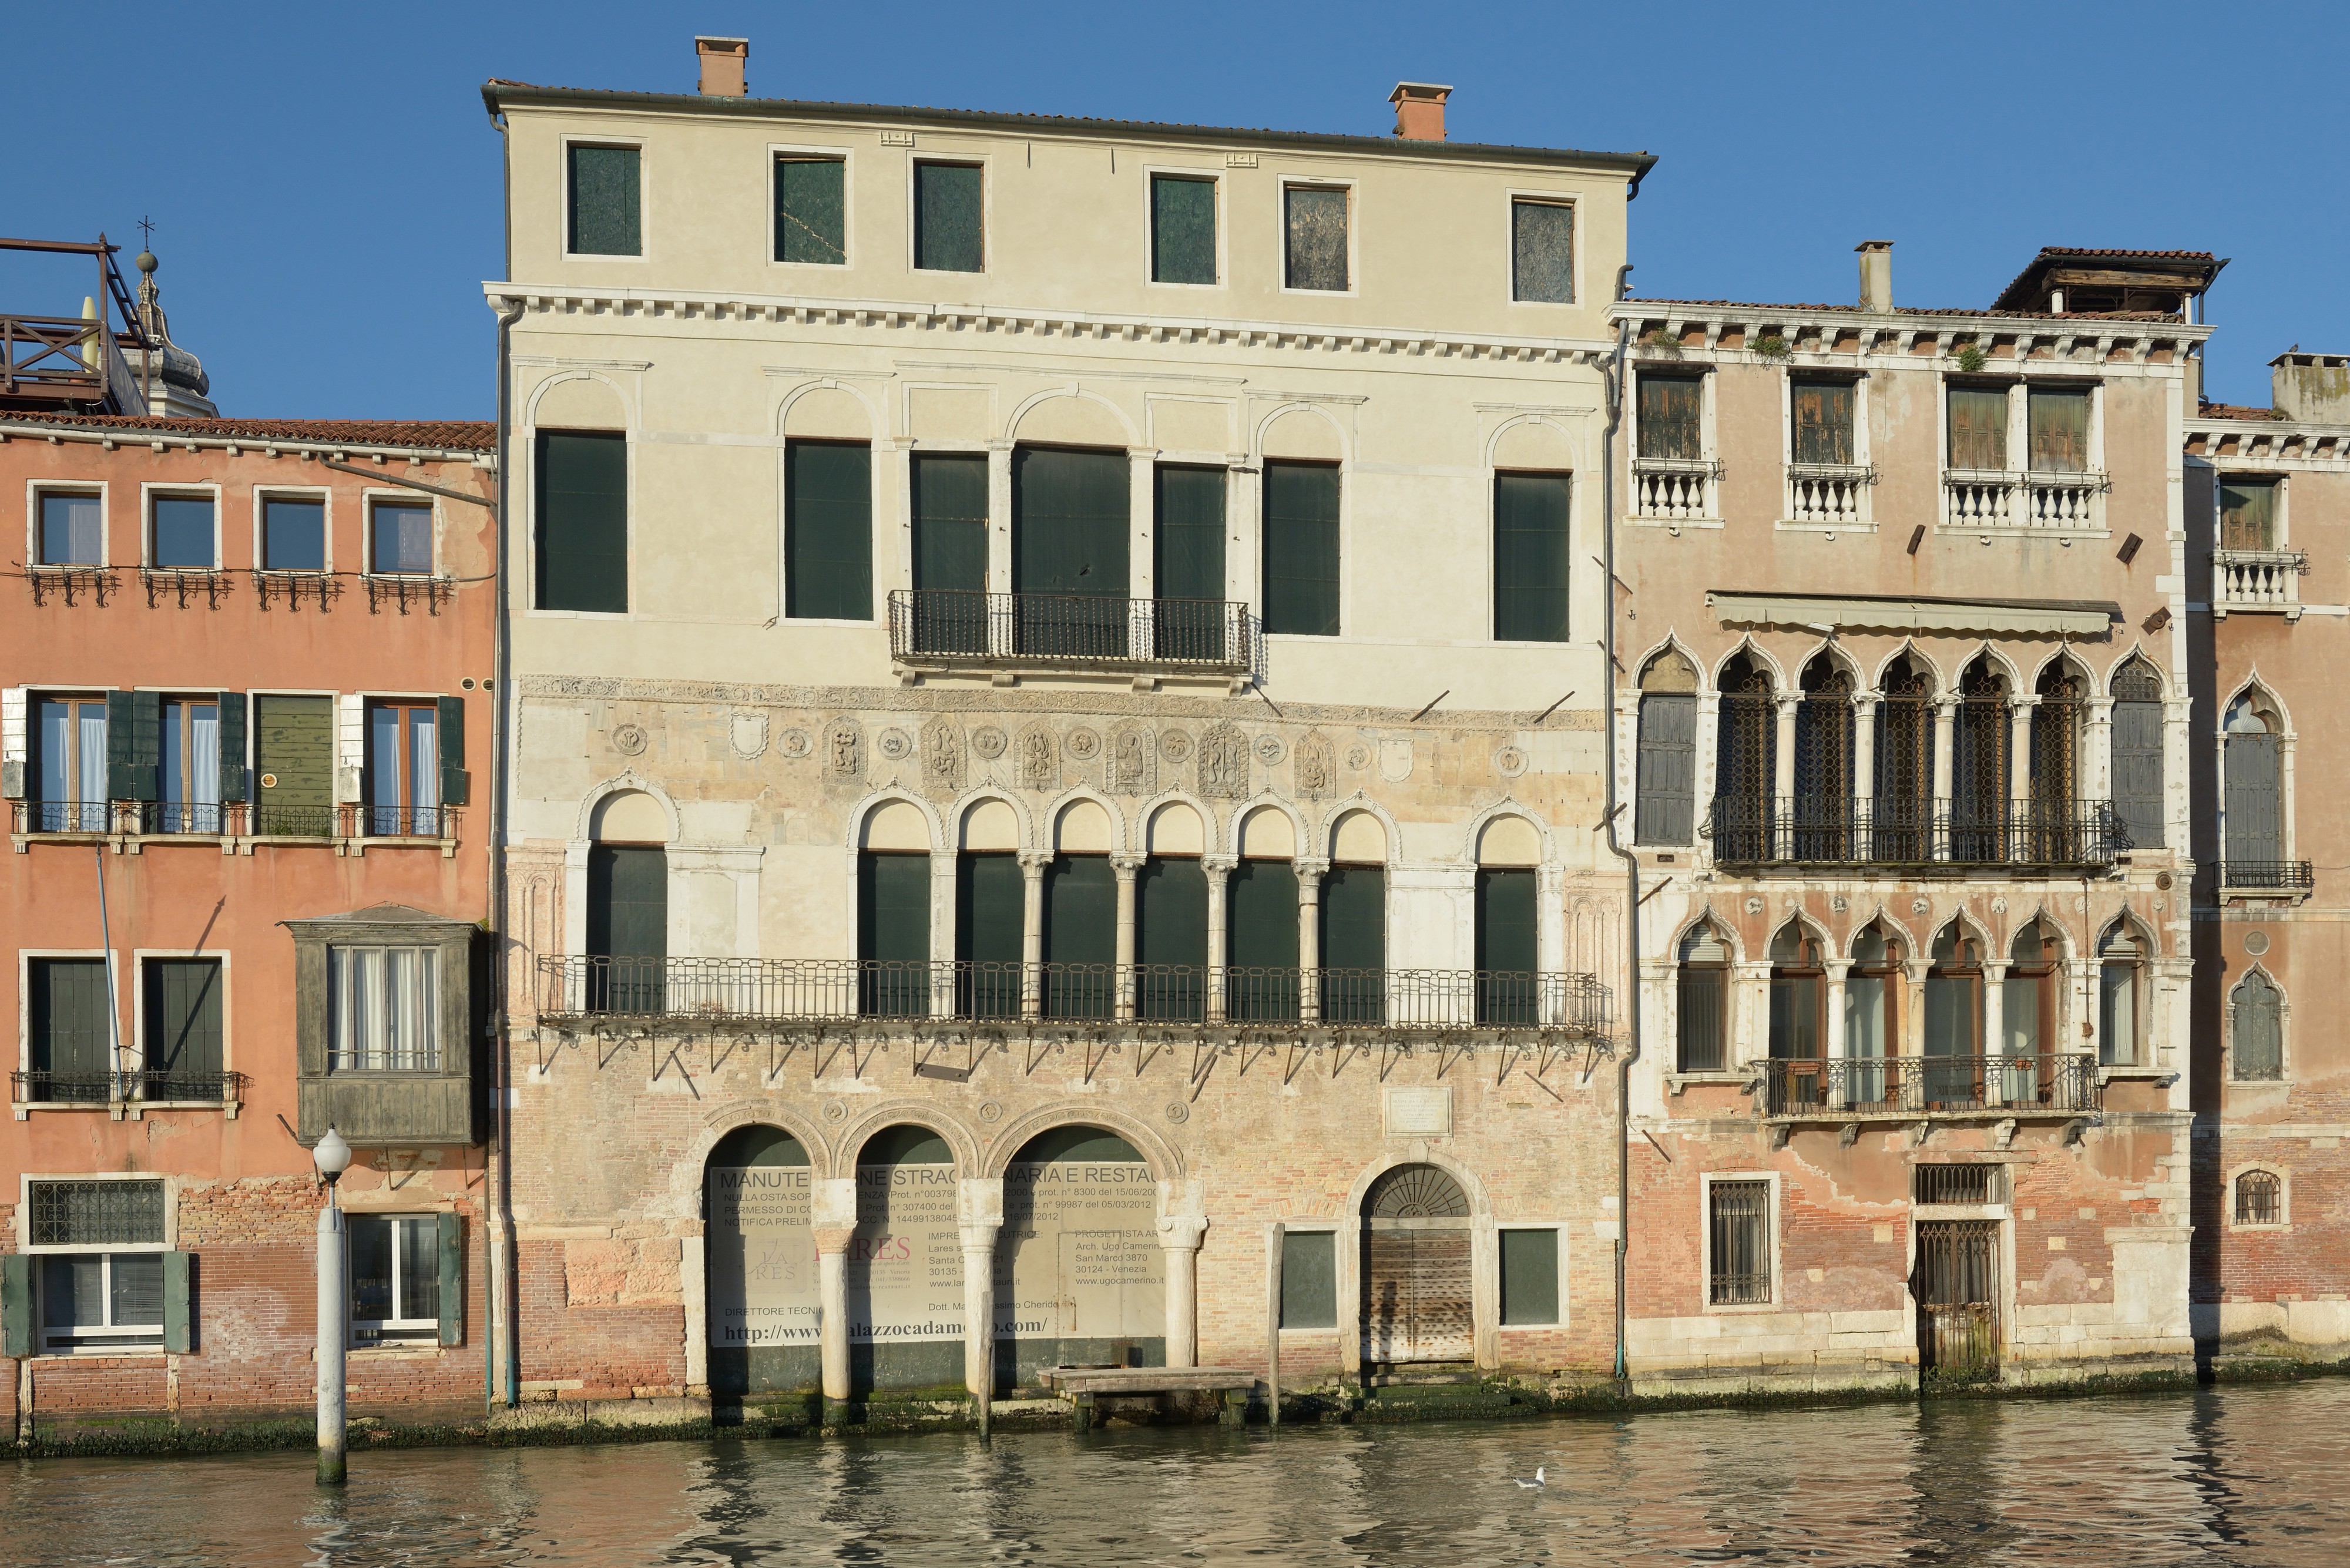 Palazzo Ca' da Mosto Canal Grande Venezia